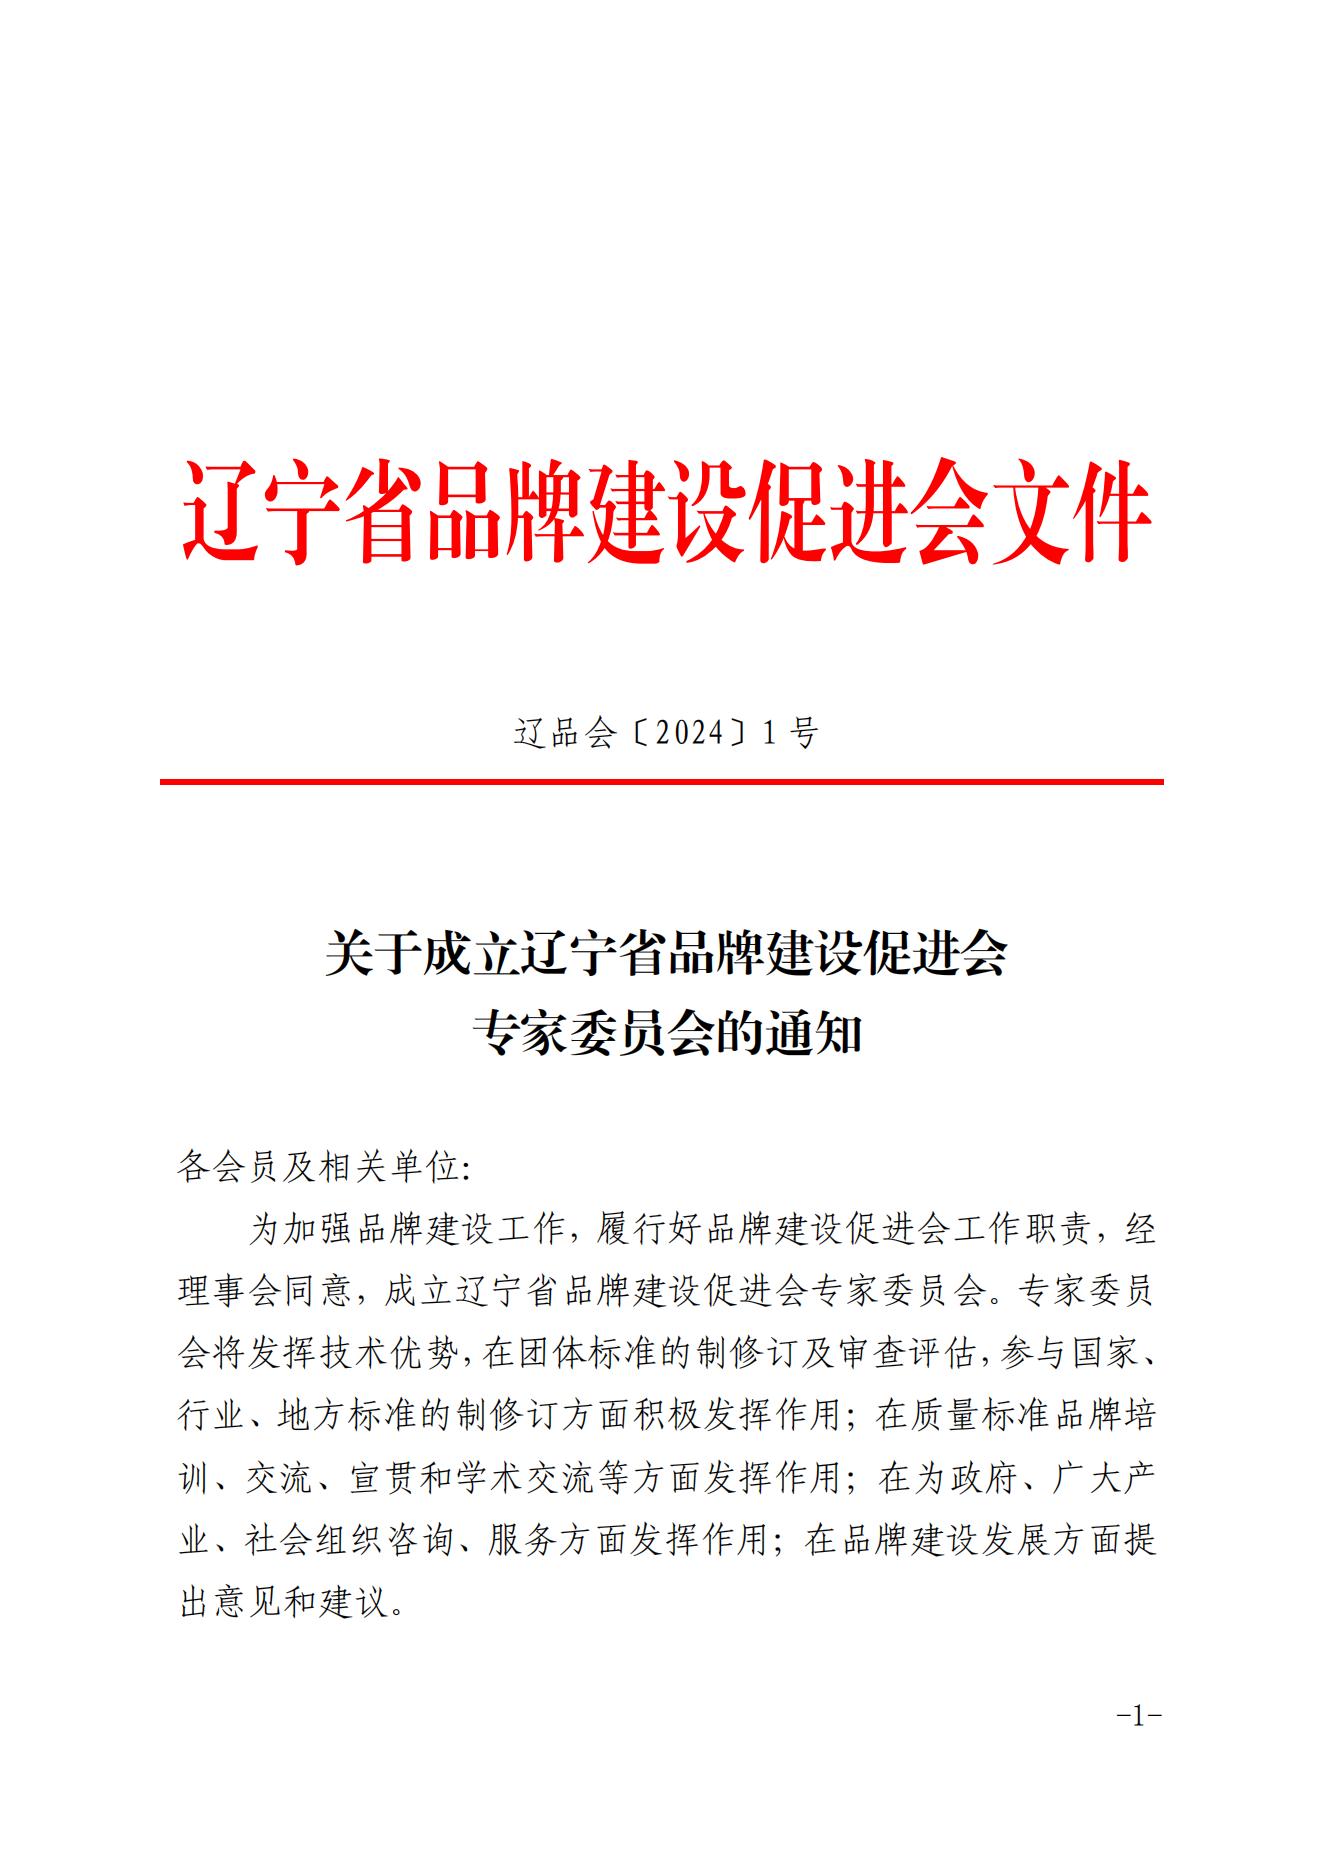 关于成立辽宁省品牌建设促进会专家委员会的通知